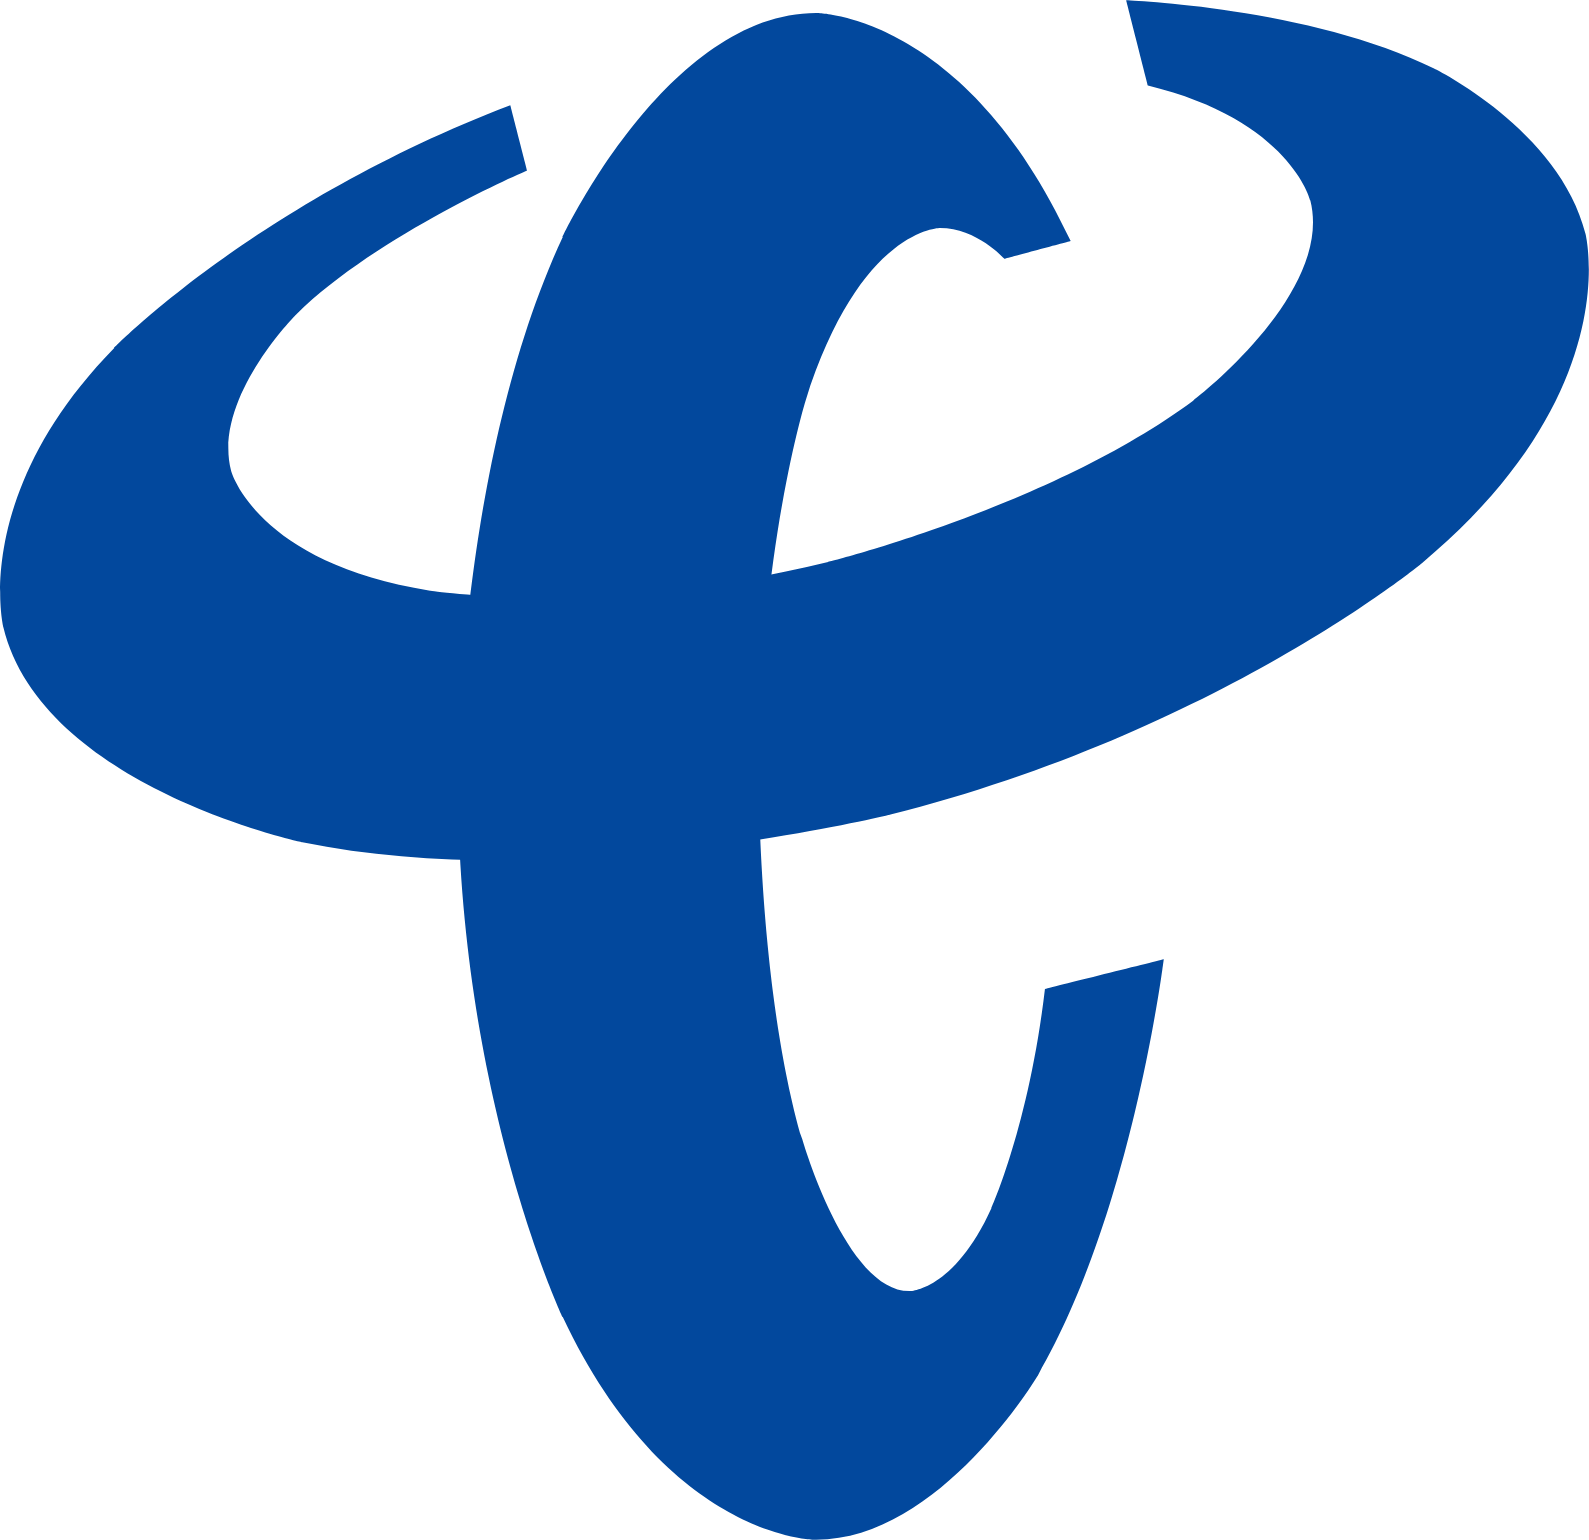 China Telecom logo (PNG transparent)